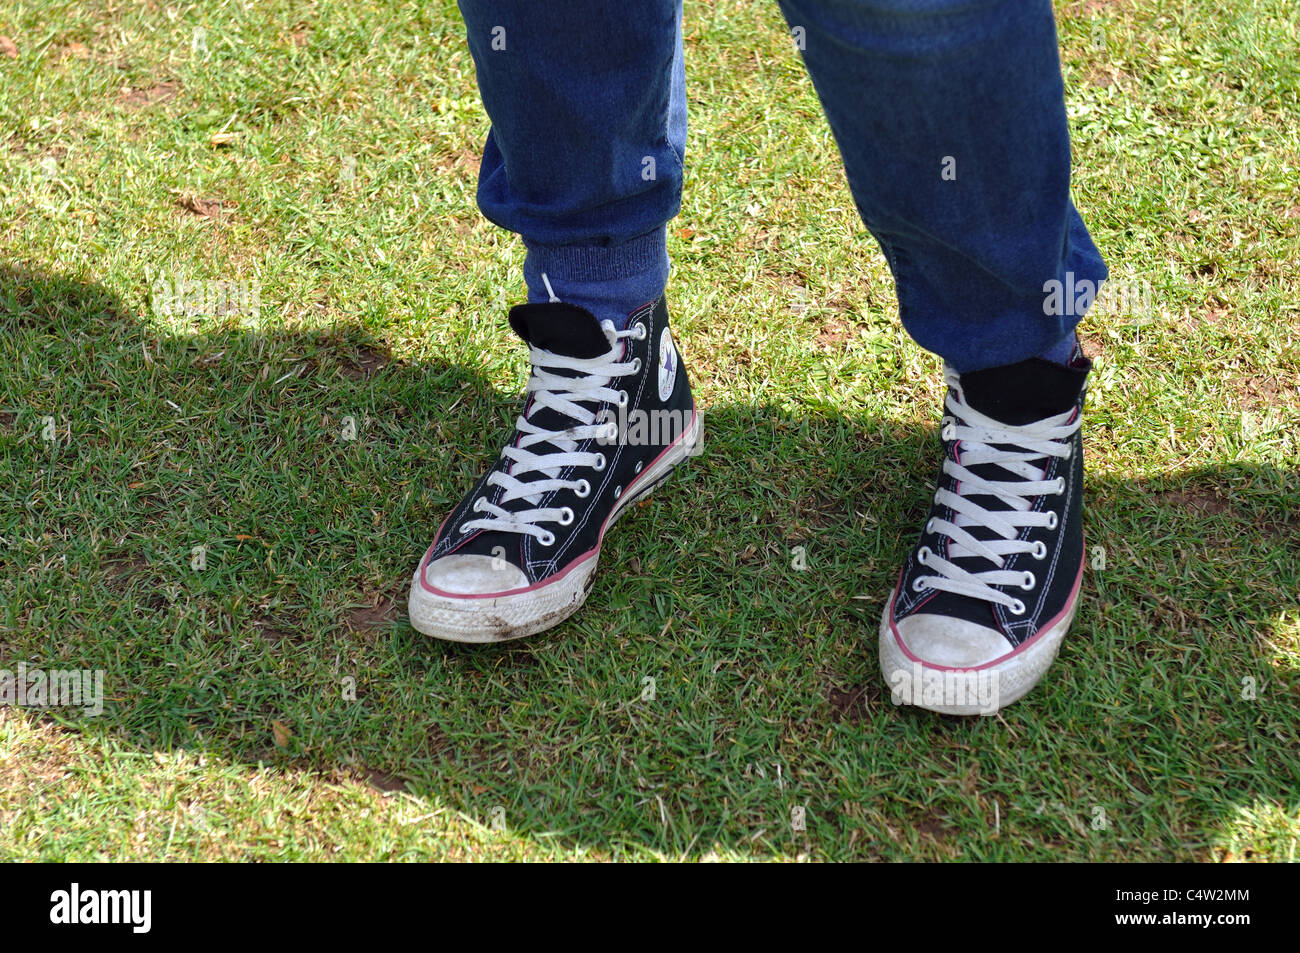 Teenage male wearing Converse baseball boots Stock Photo - Alamy